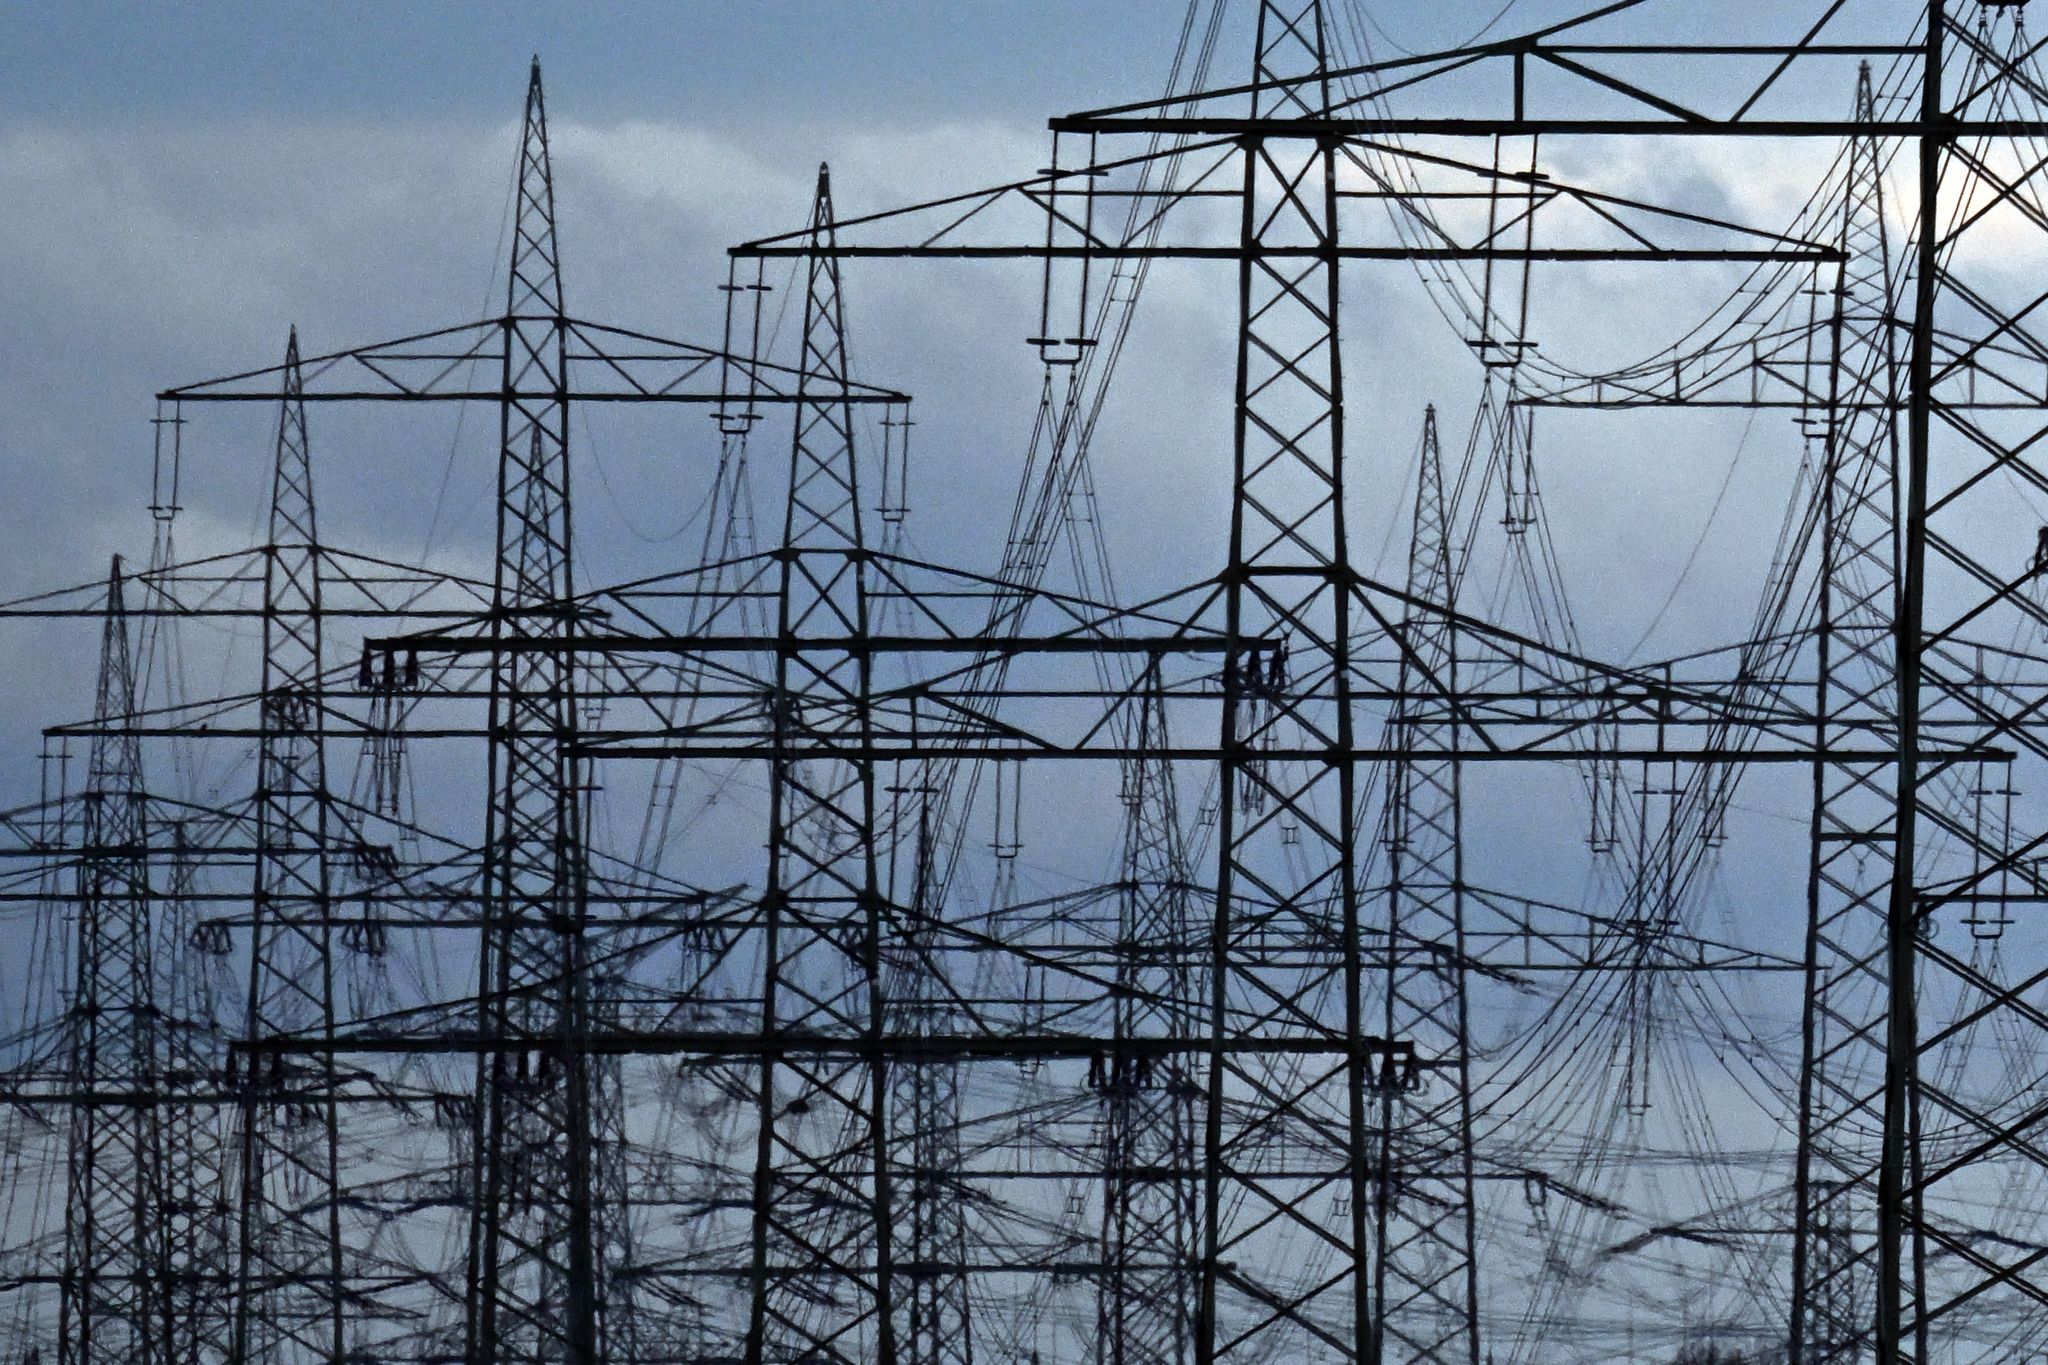 Strommasten auf einem Acker. «Die Zeit der billigen Energie ist vorbei», meint Netzagenturchef Müller.